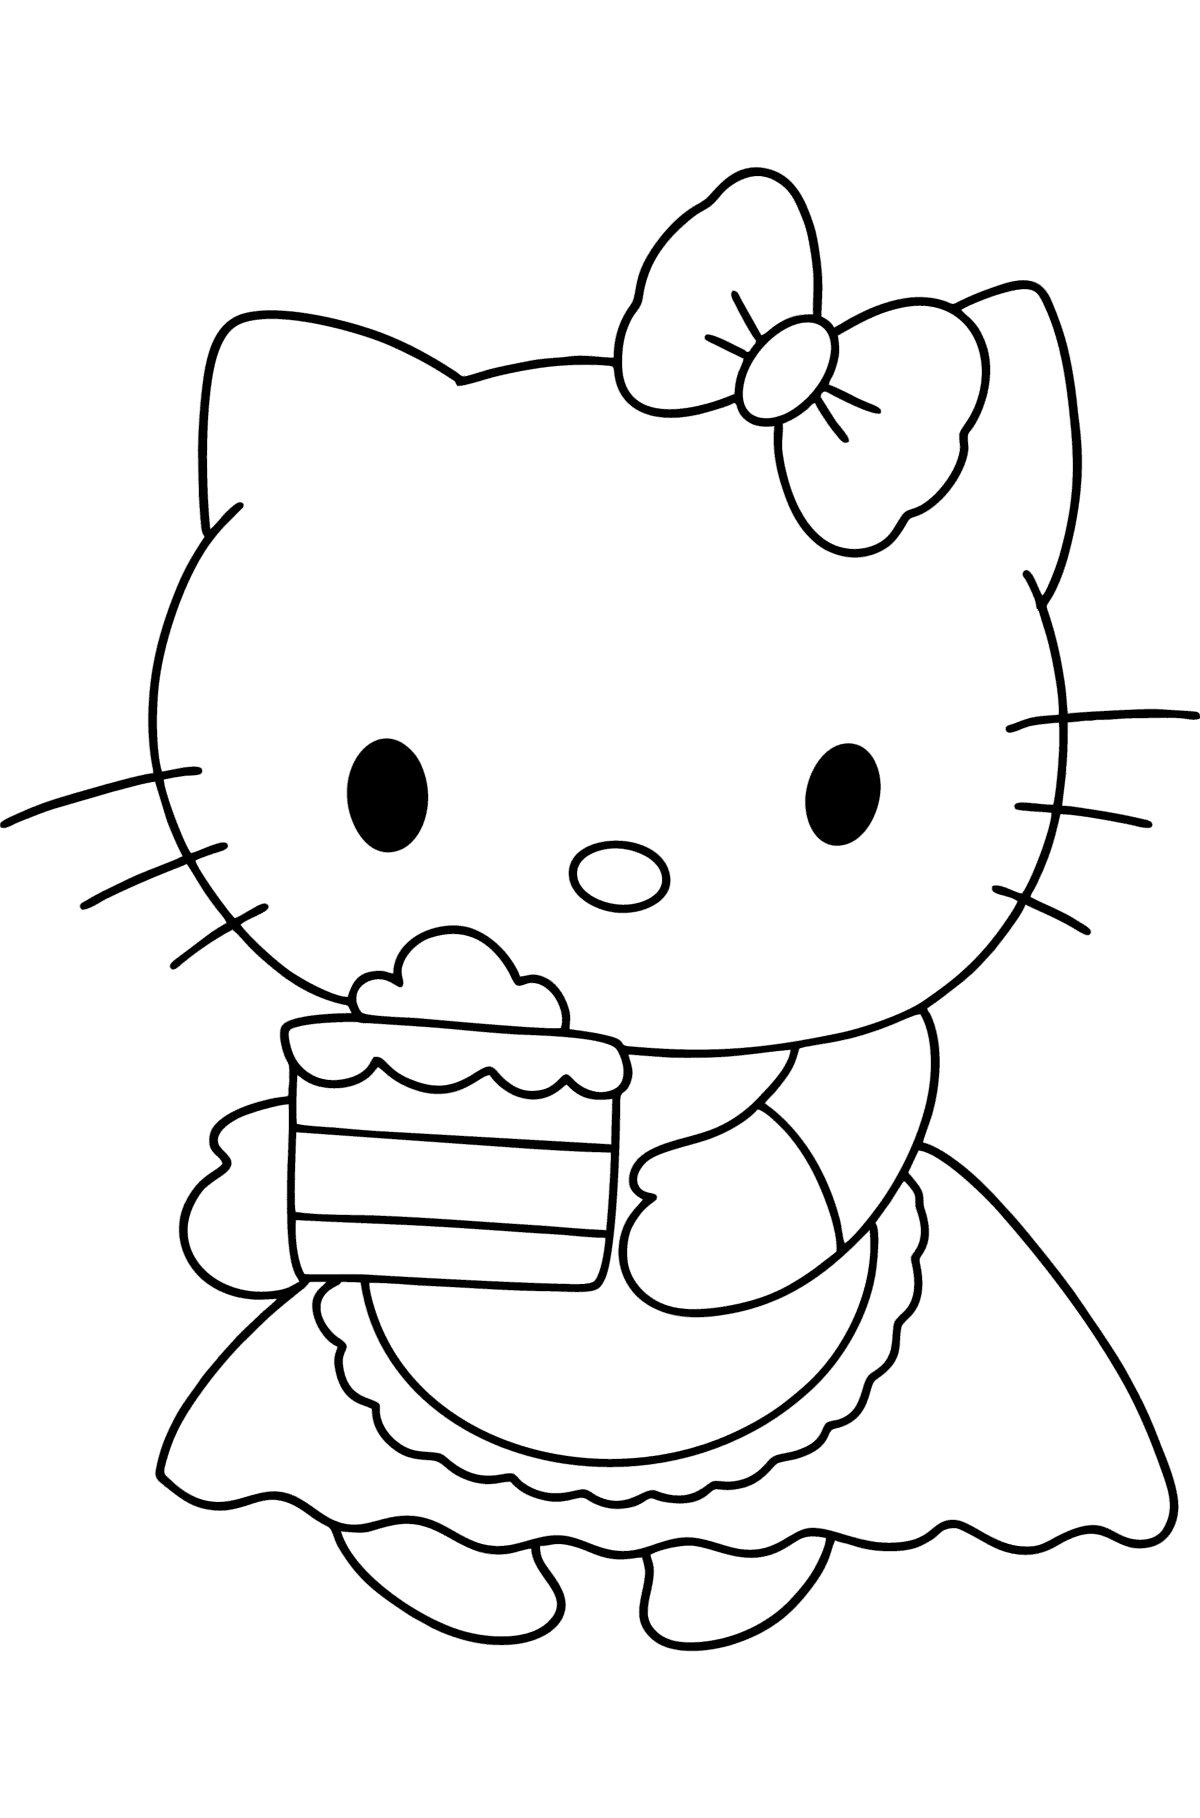 Tegning til fargelegging Hello Kitty og kake - Tegninger til fargelegging for barn